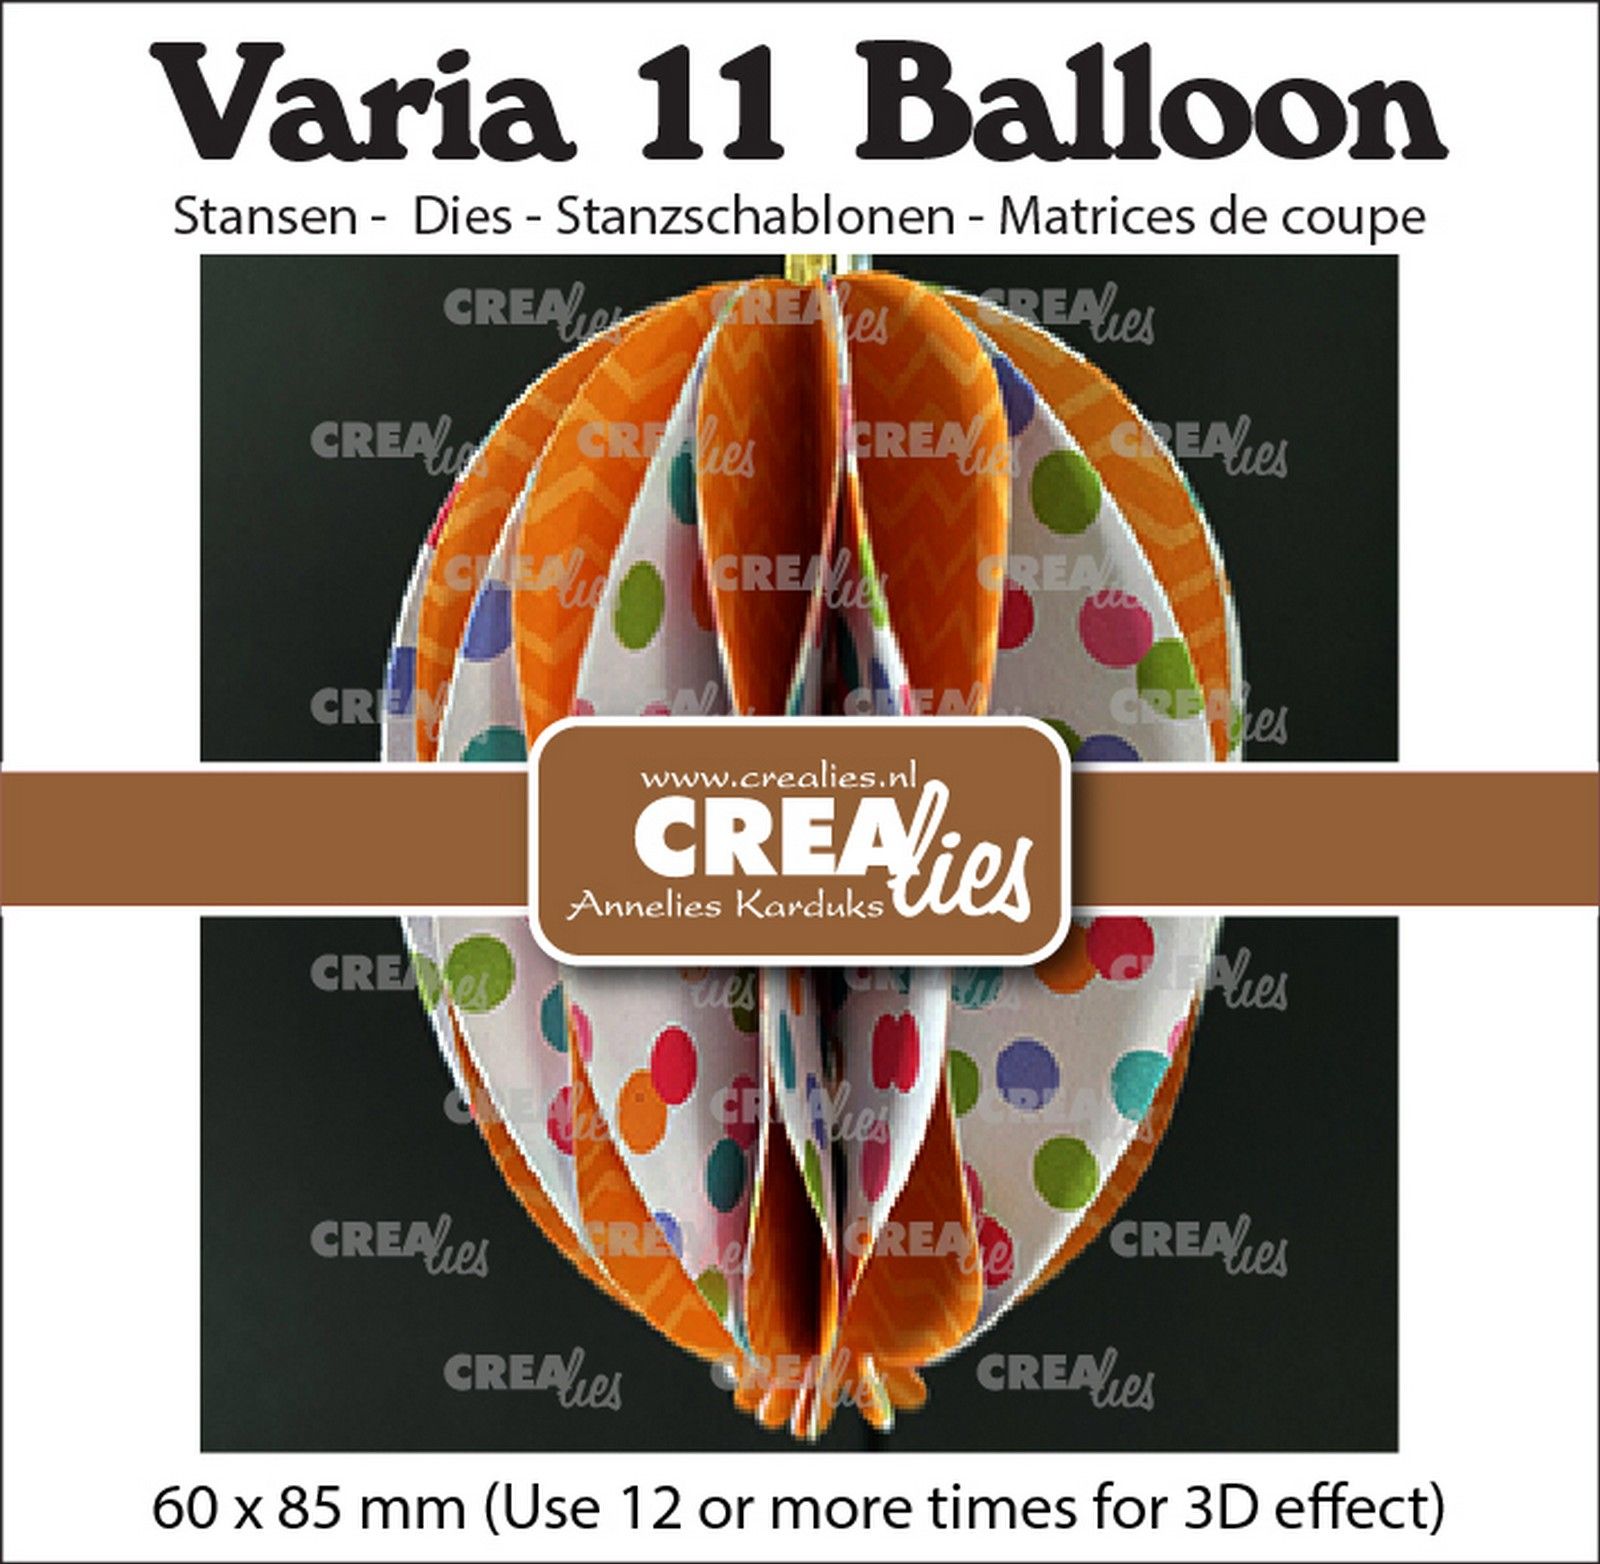 Crealies • Varia 3D Balloon